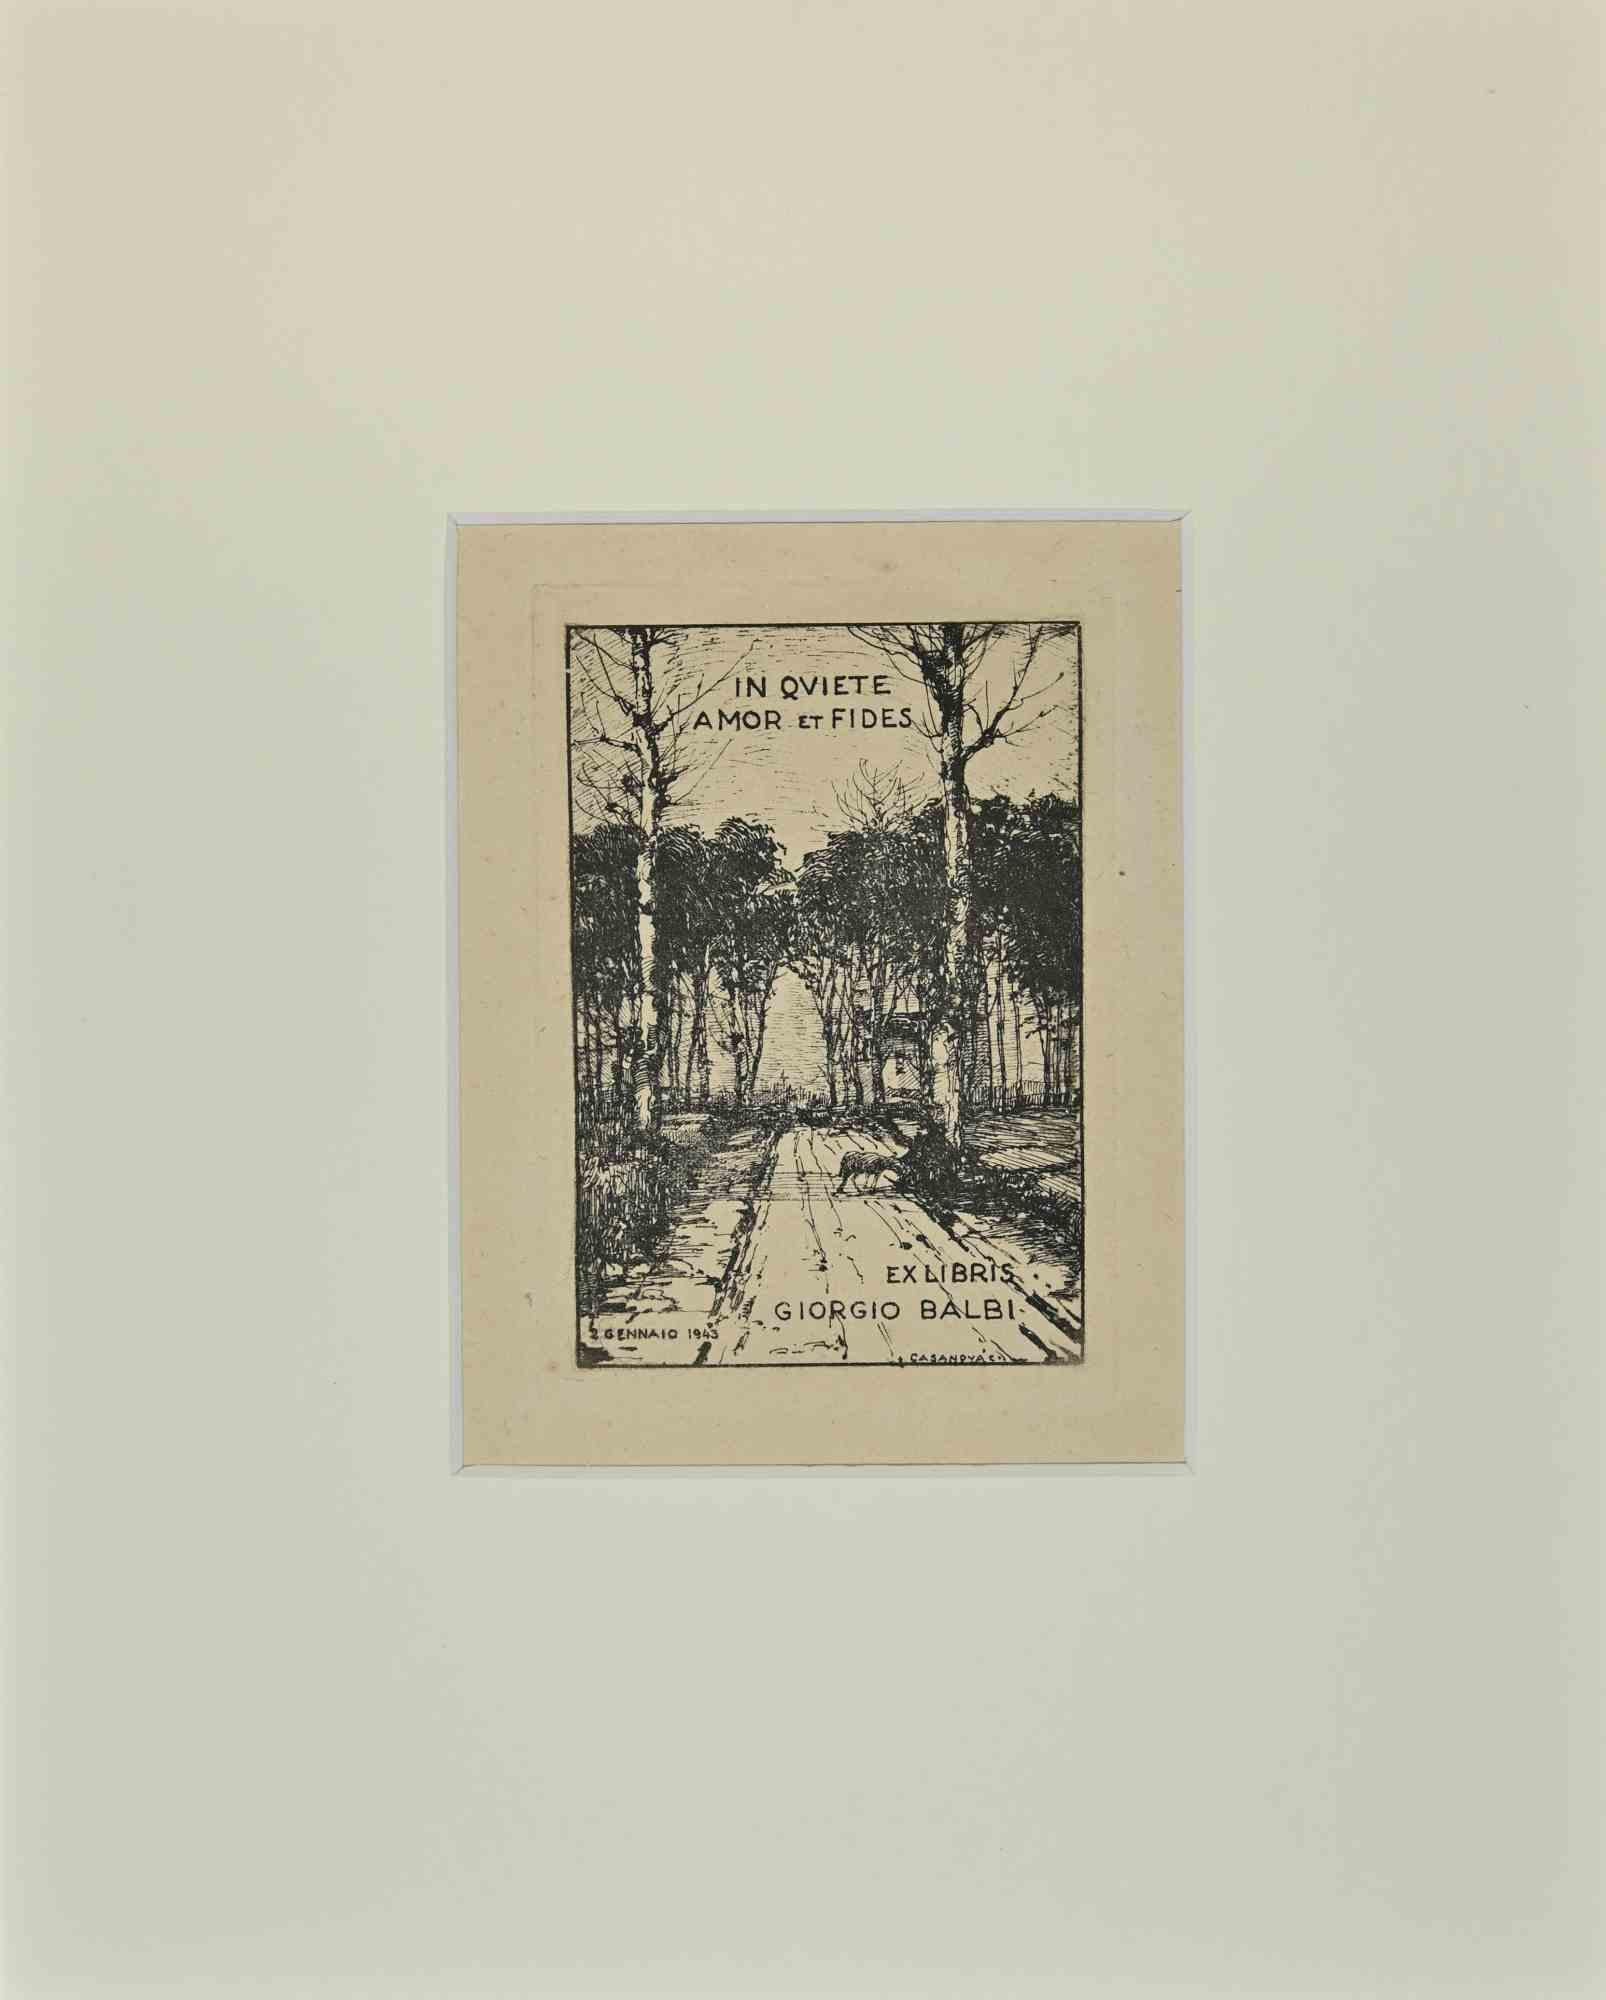 Ex Libris Giorgio Balbi - Etching - 1943 - Art by Carlo Casanova